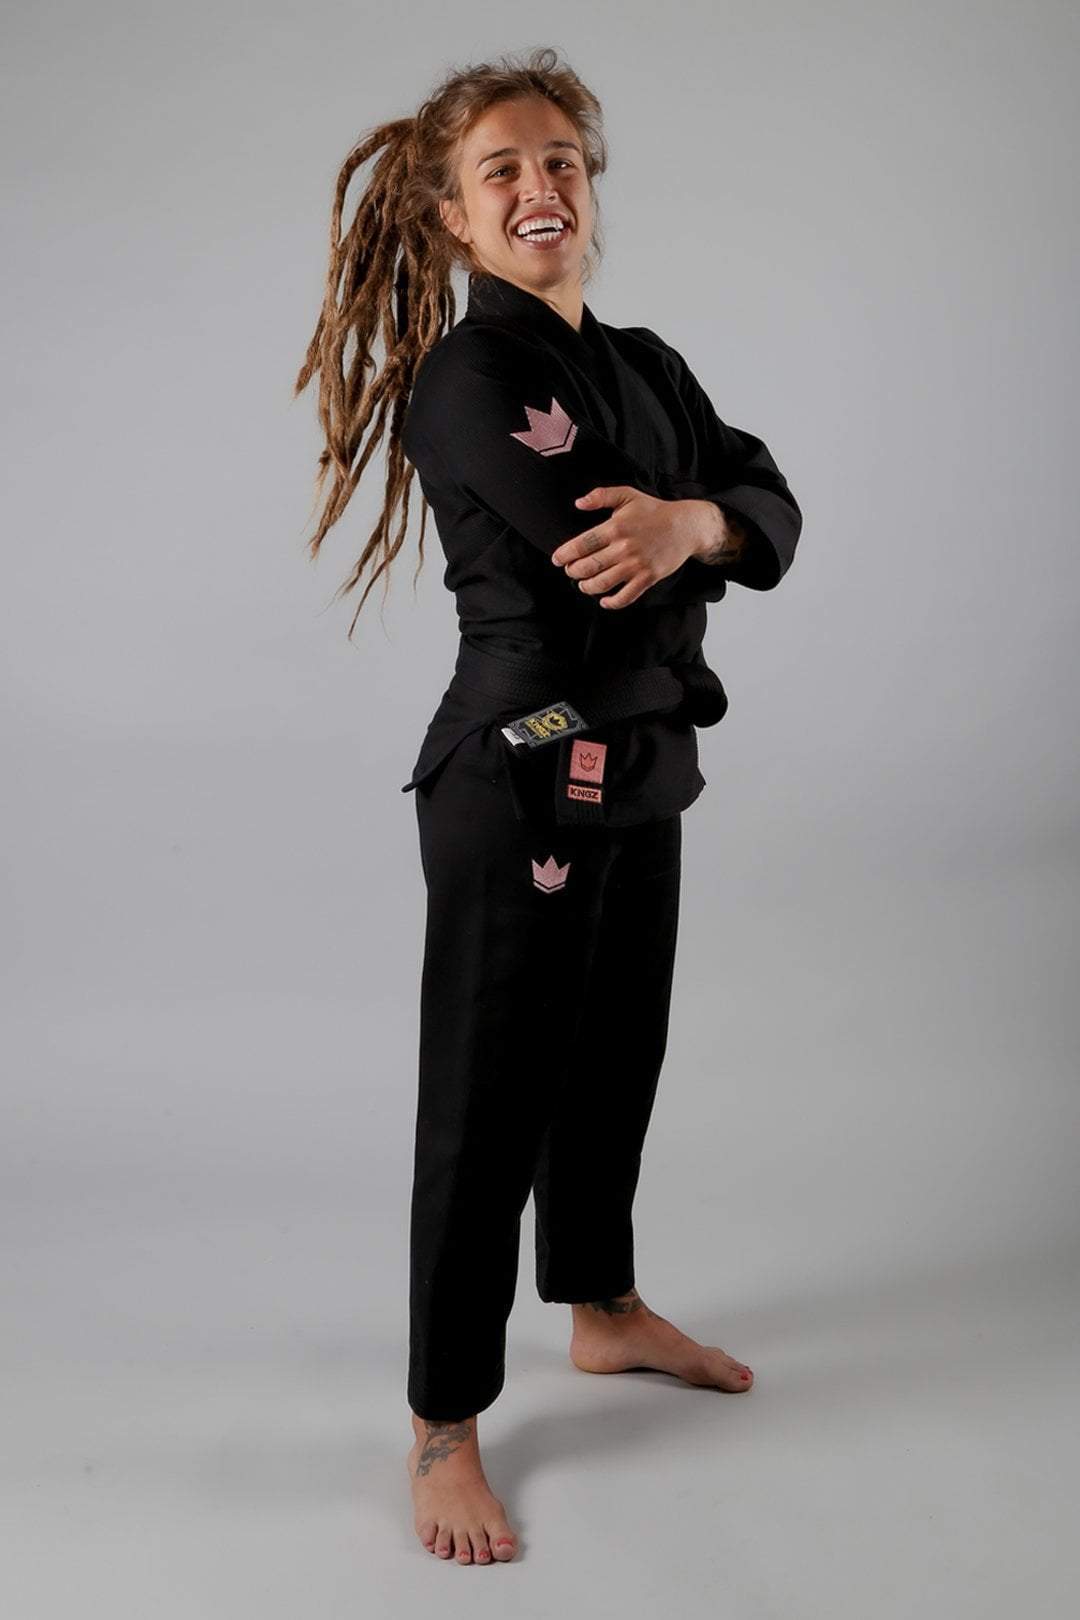 KINGZ The ONE Womens Jiu Jitsu Gi - Black/Rose Gold - FREE White Belt